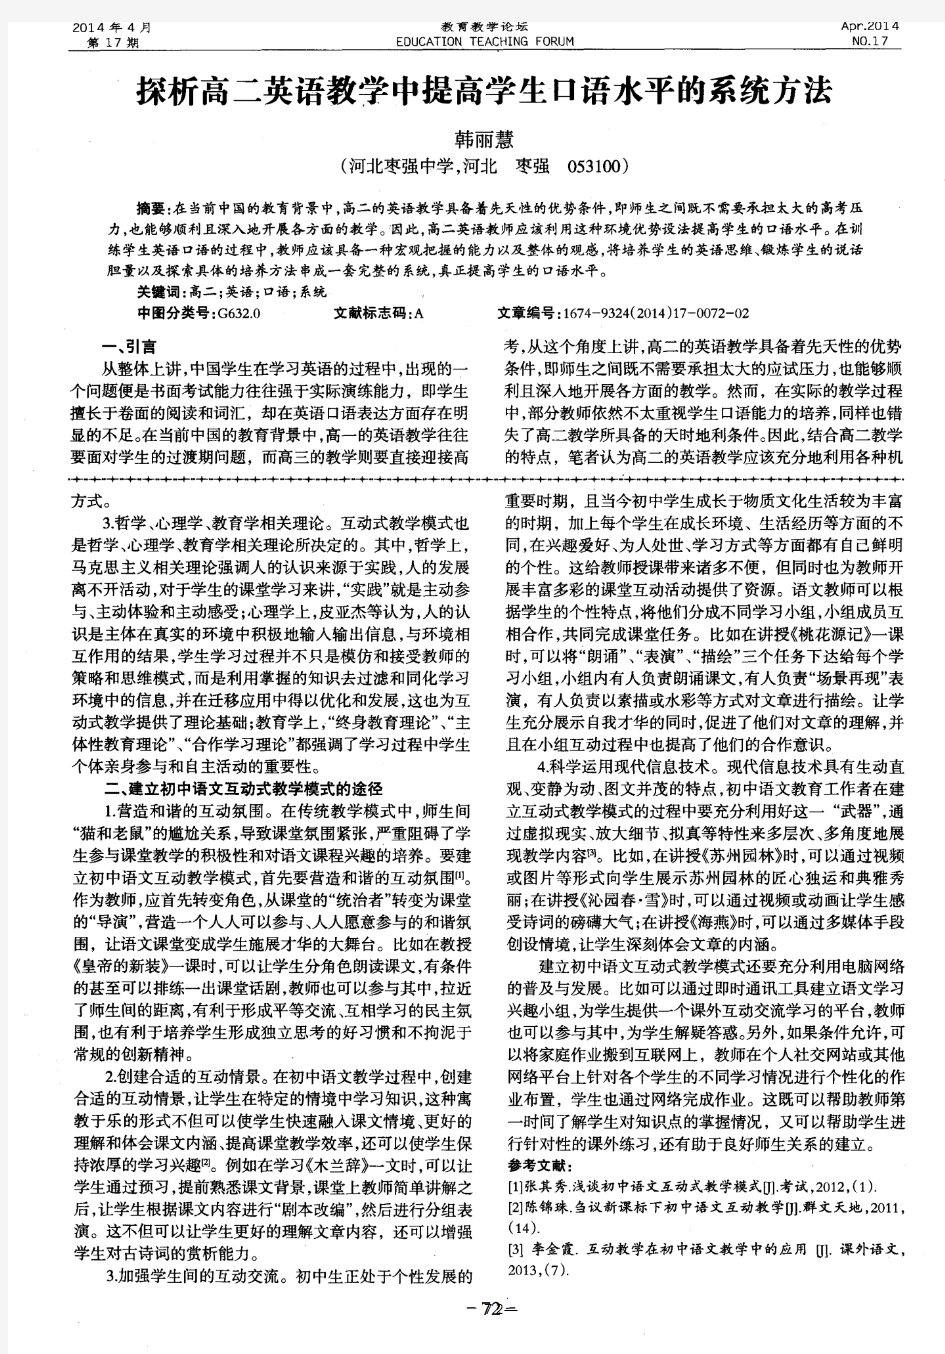 初中语文互动式教学模式的建立